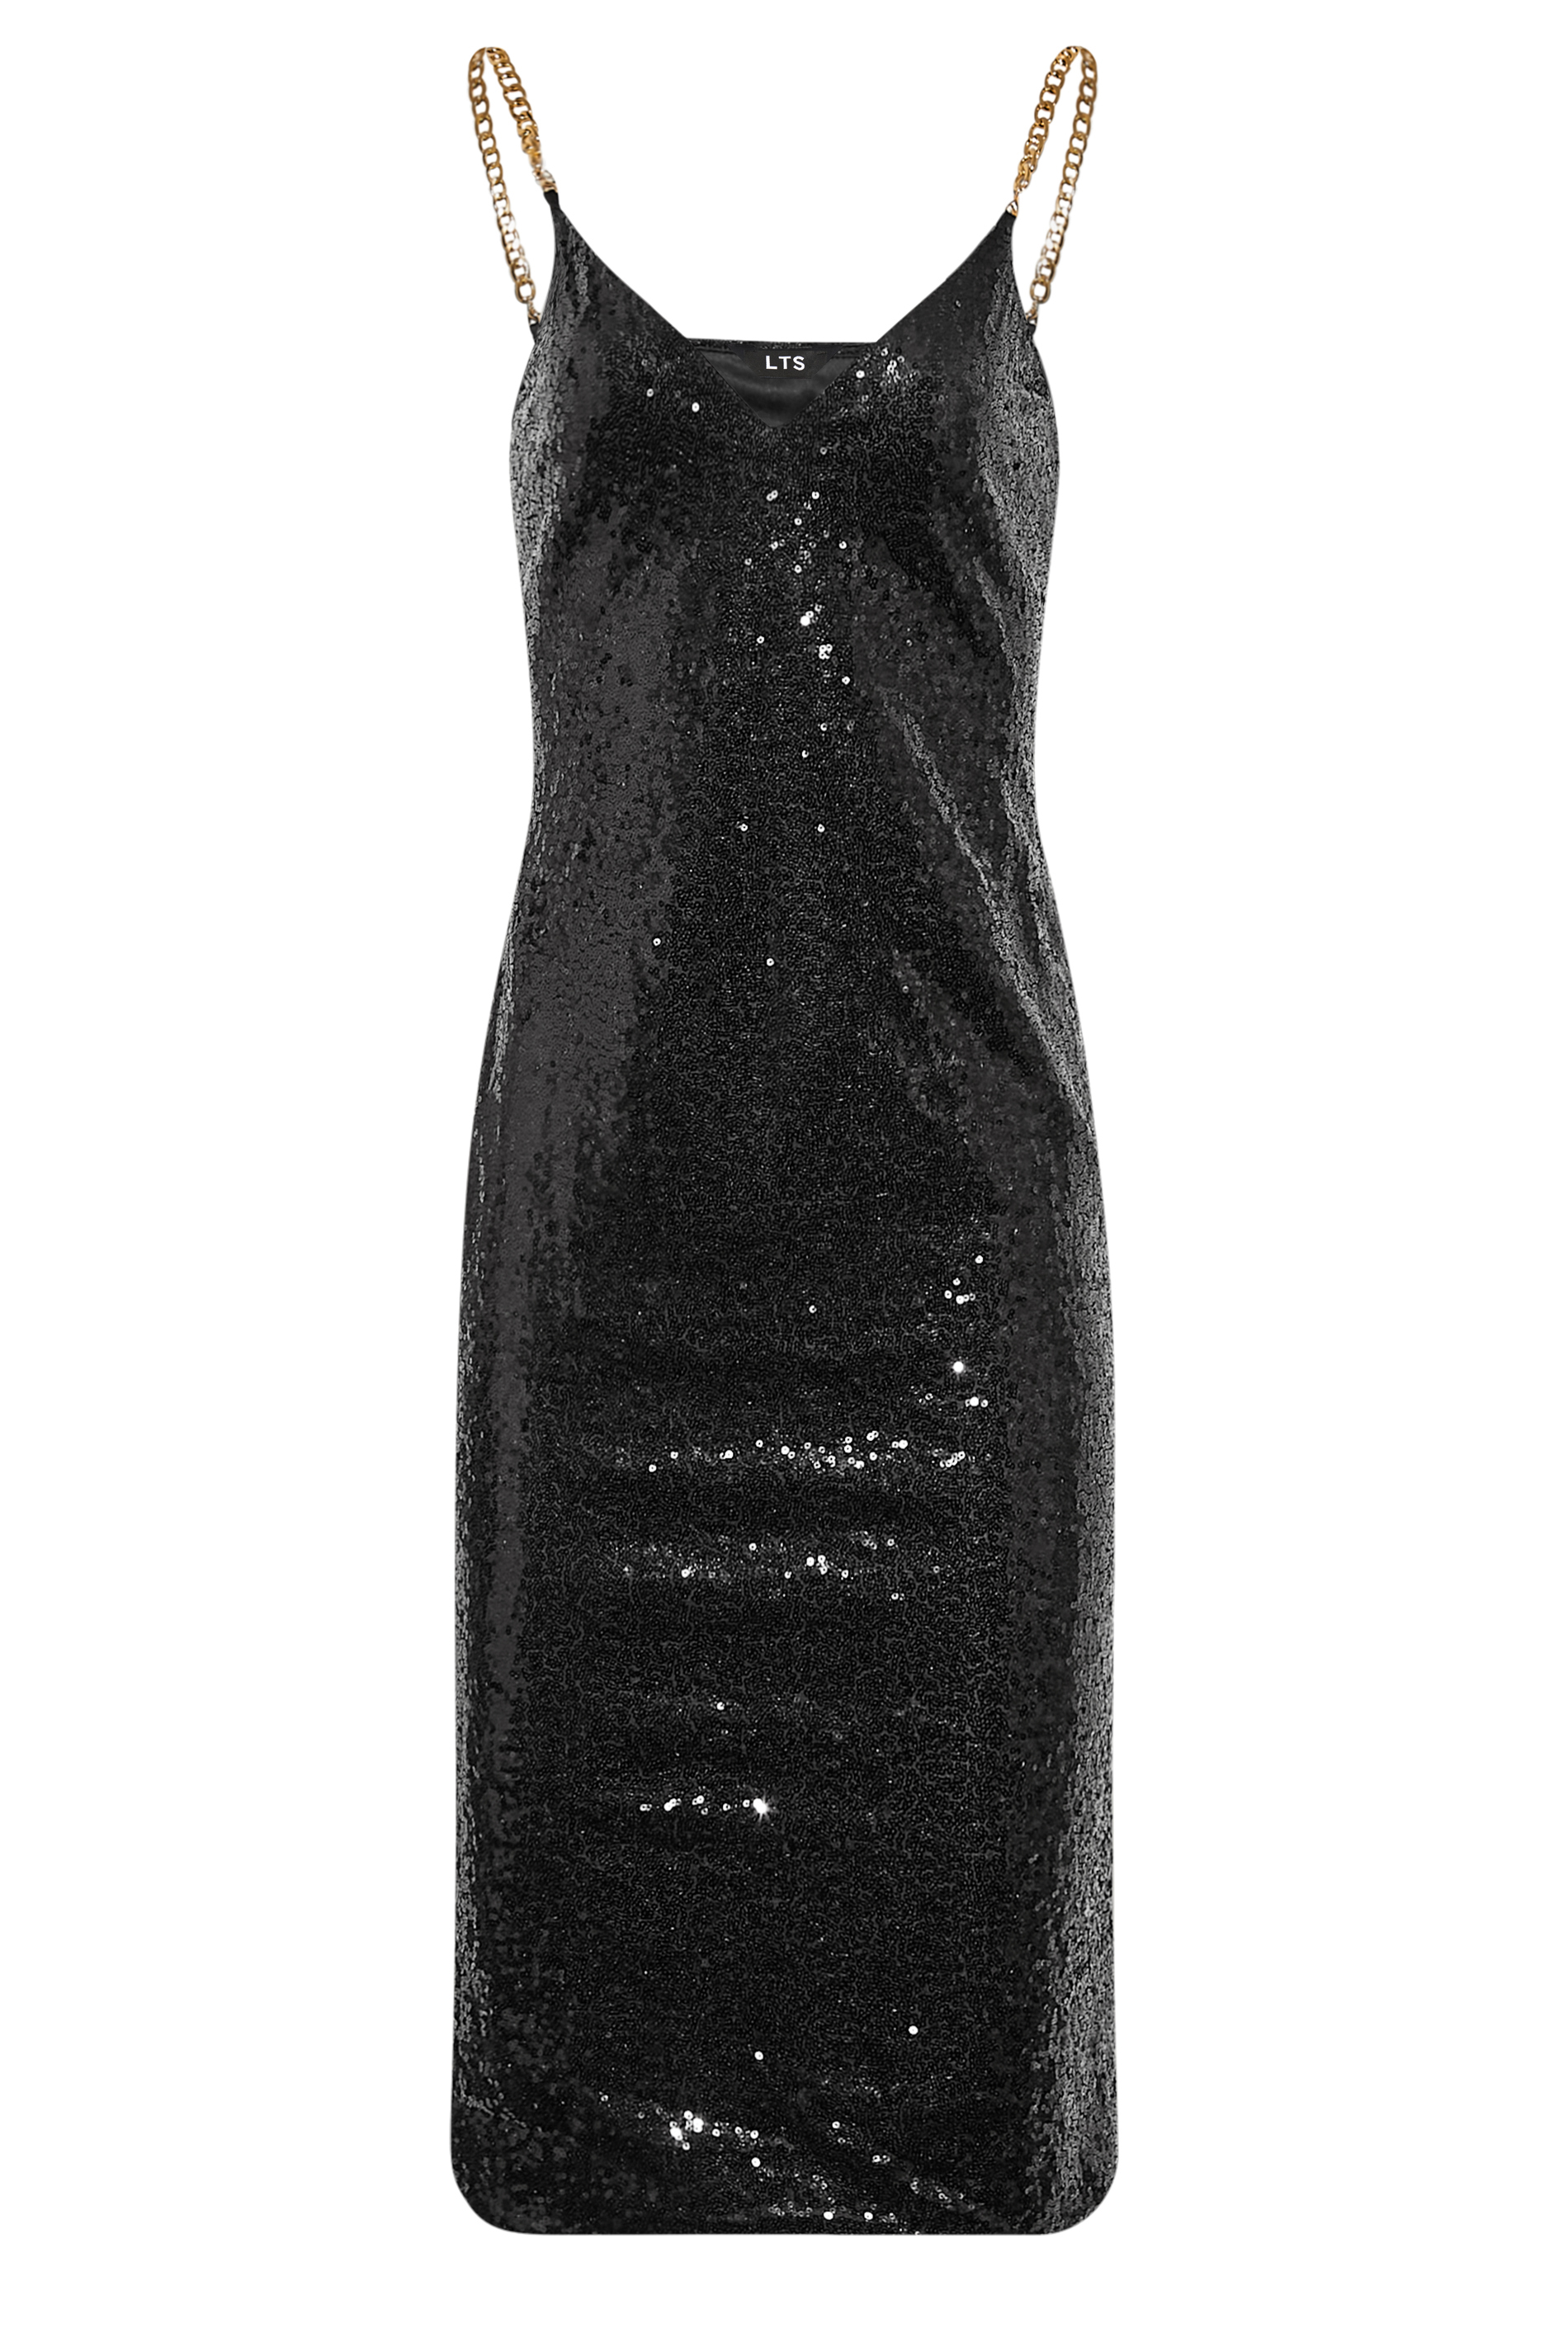 LTS Tall Women's Black Sequin Chain Strap Mini Dress | Long Tall Sally 2